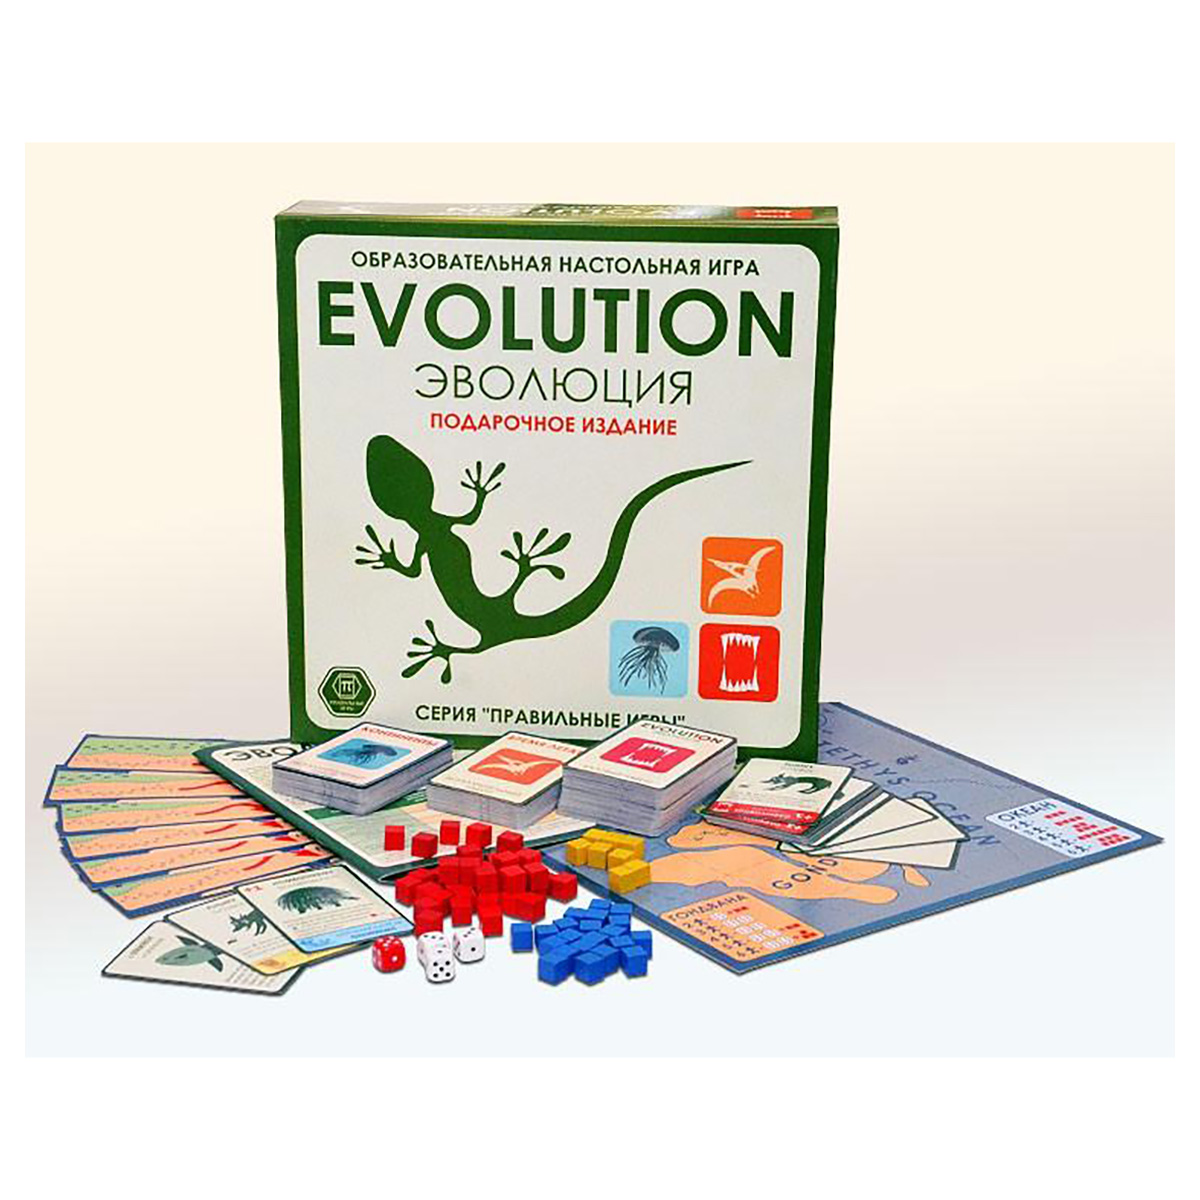 3-01-04 Эволюция. Подарочный набор (базовый+2 дополнения). Настольная игра правильные игры Эволюция. Новая игра эволюция